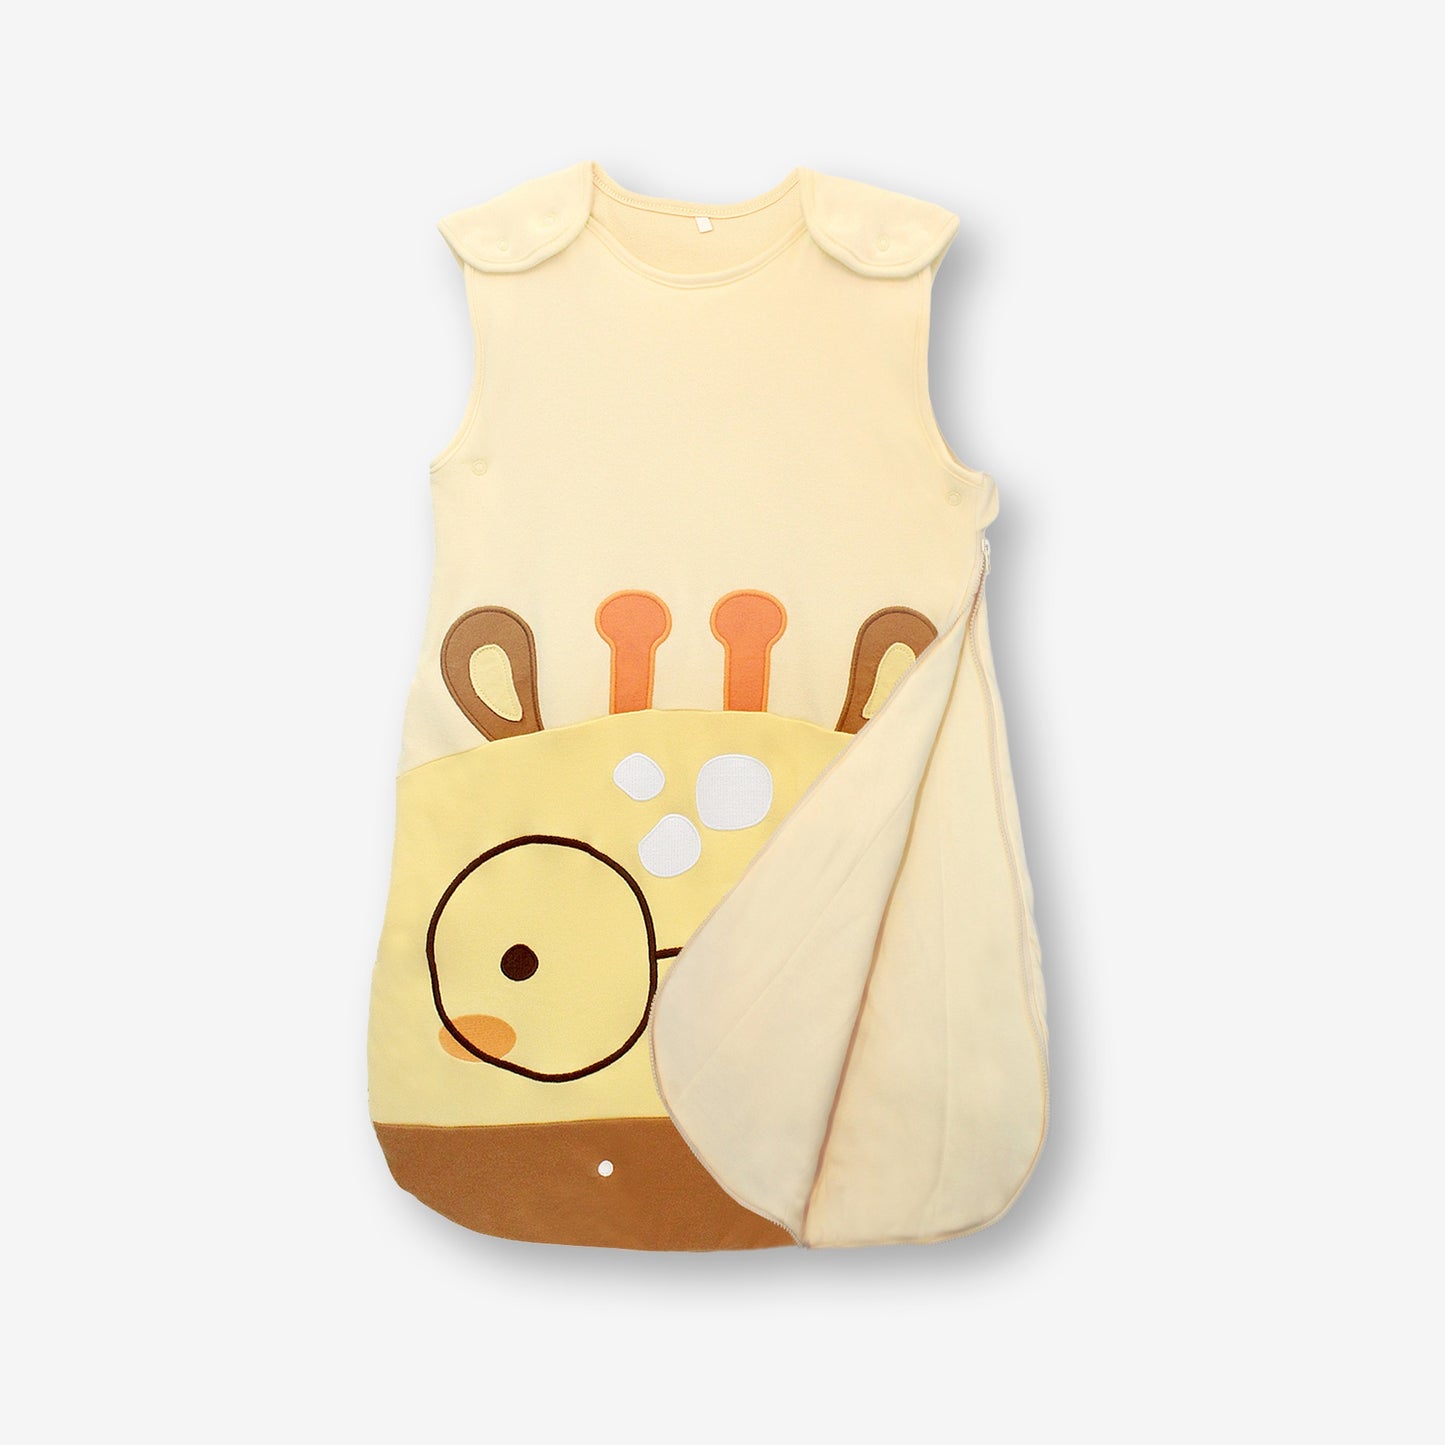 MiDes │ Giraffe │ Infant Padded Vest Sleeping Bag (6-18 months-0.5 tog)